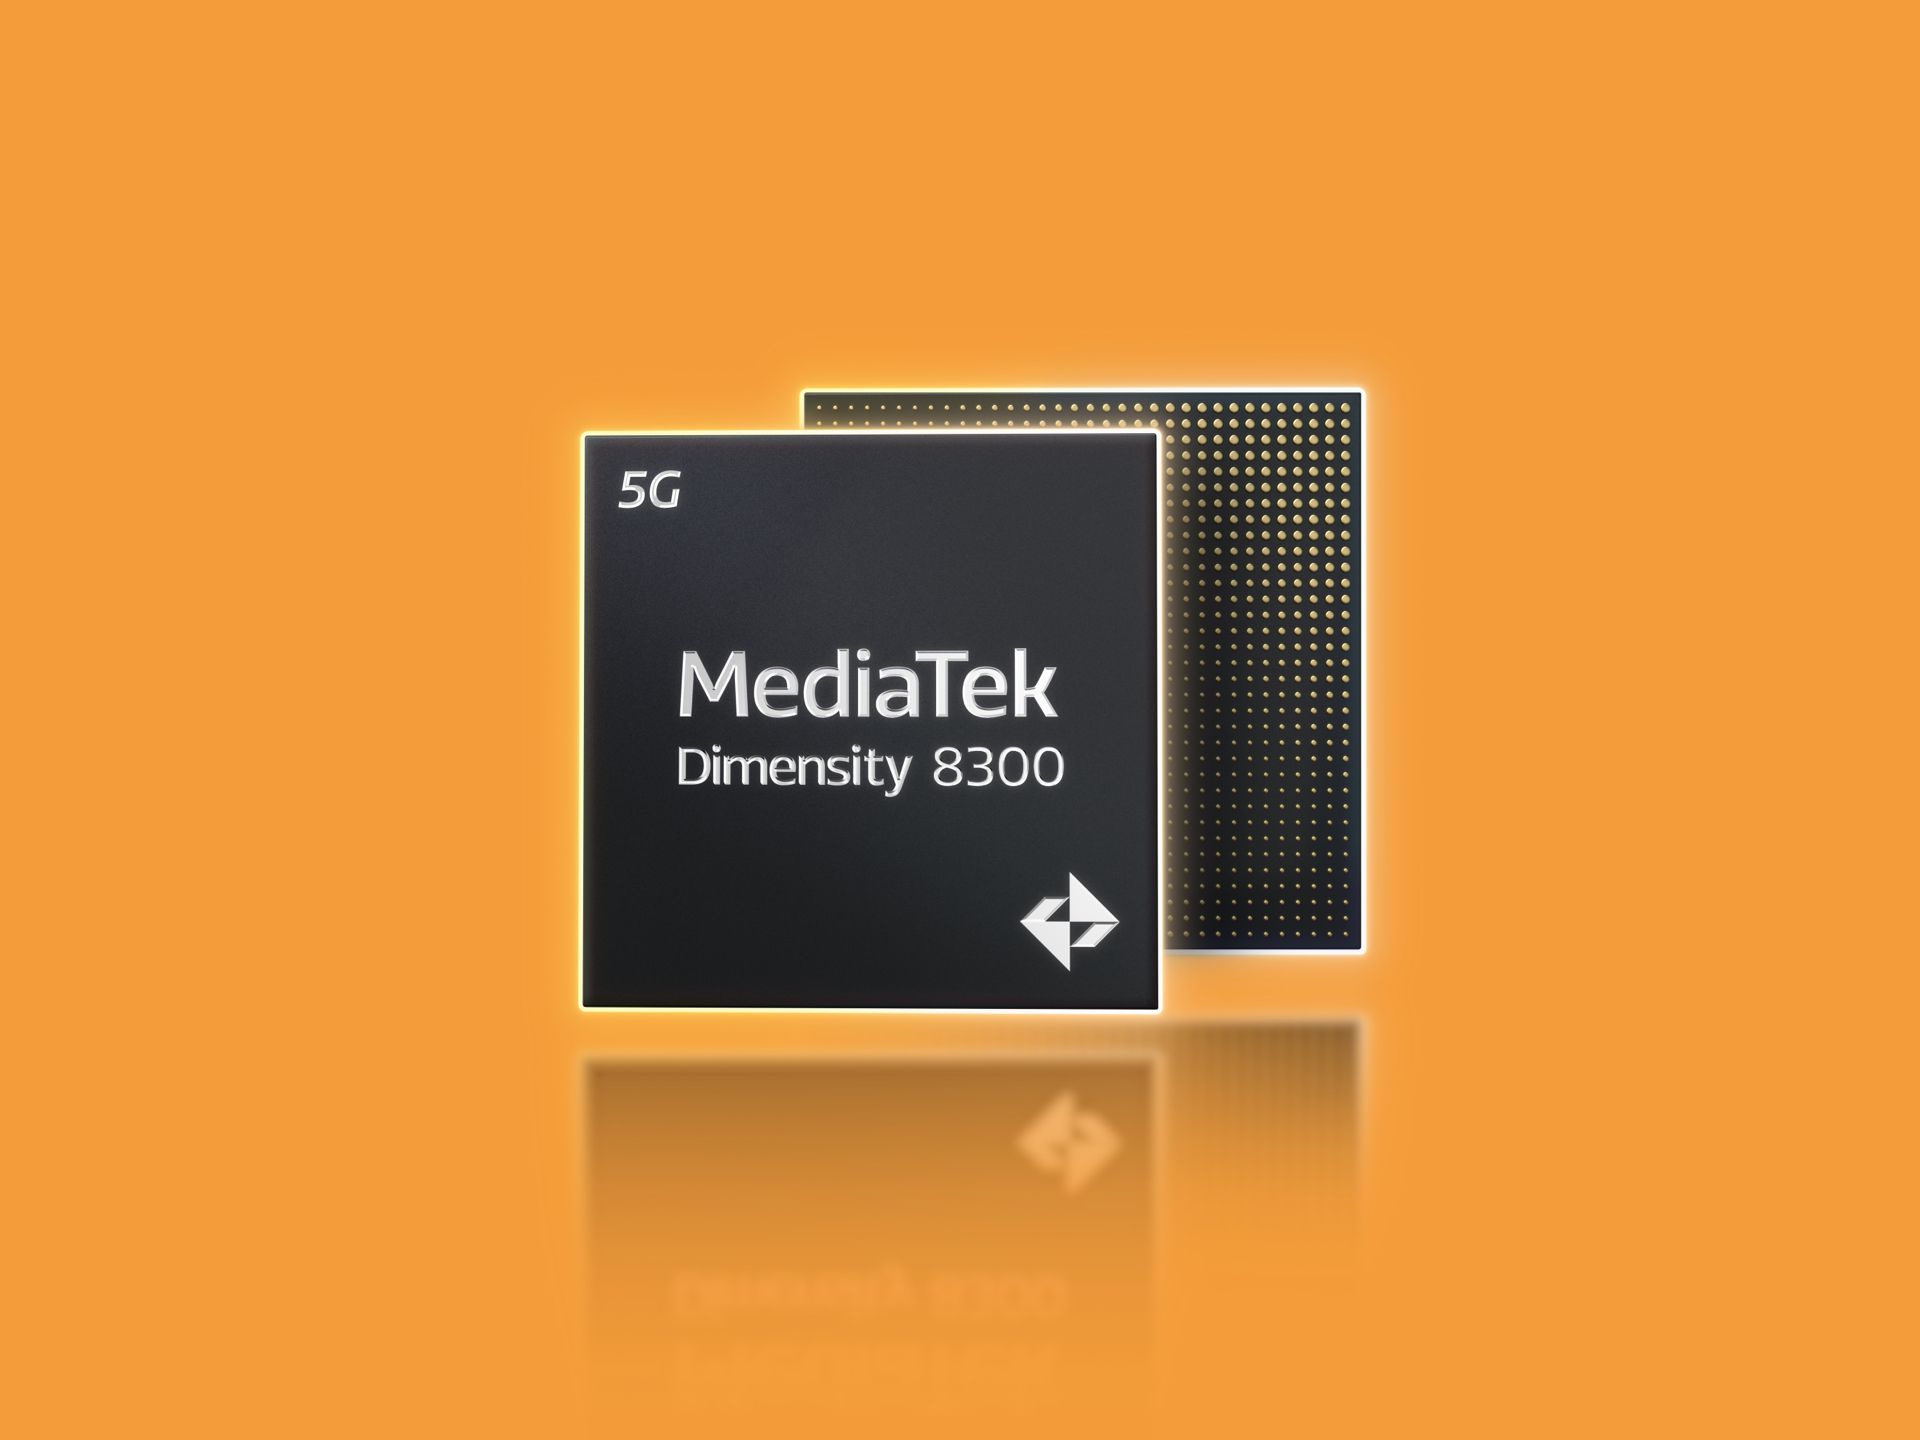 MediaTek Dimensity 8300 chipset